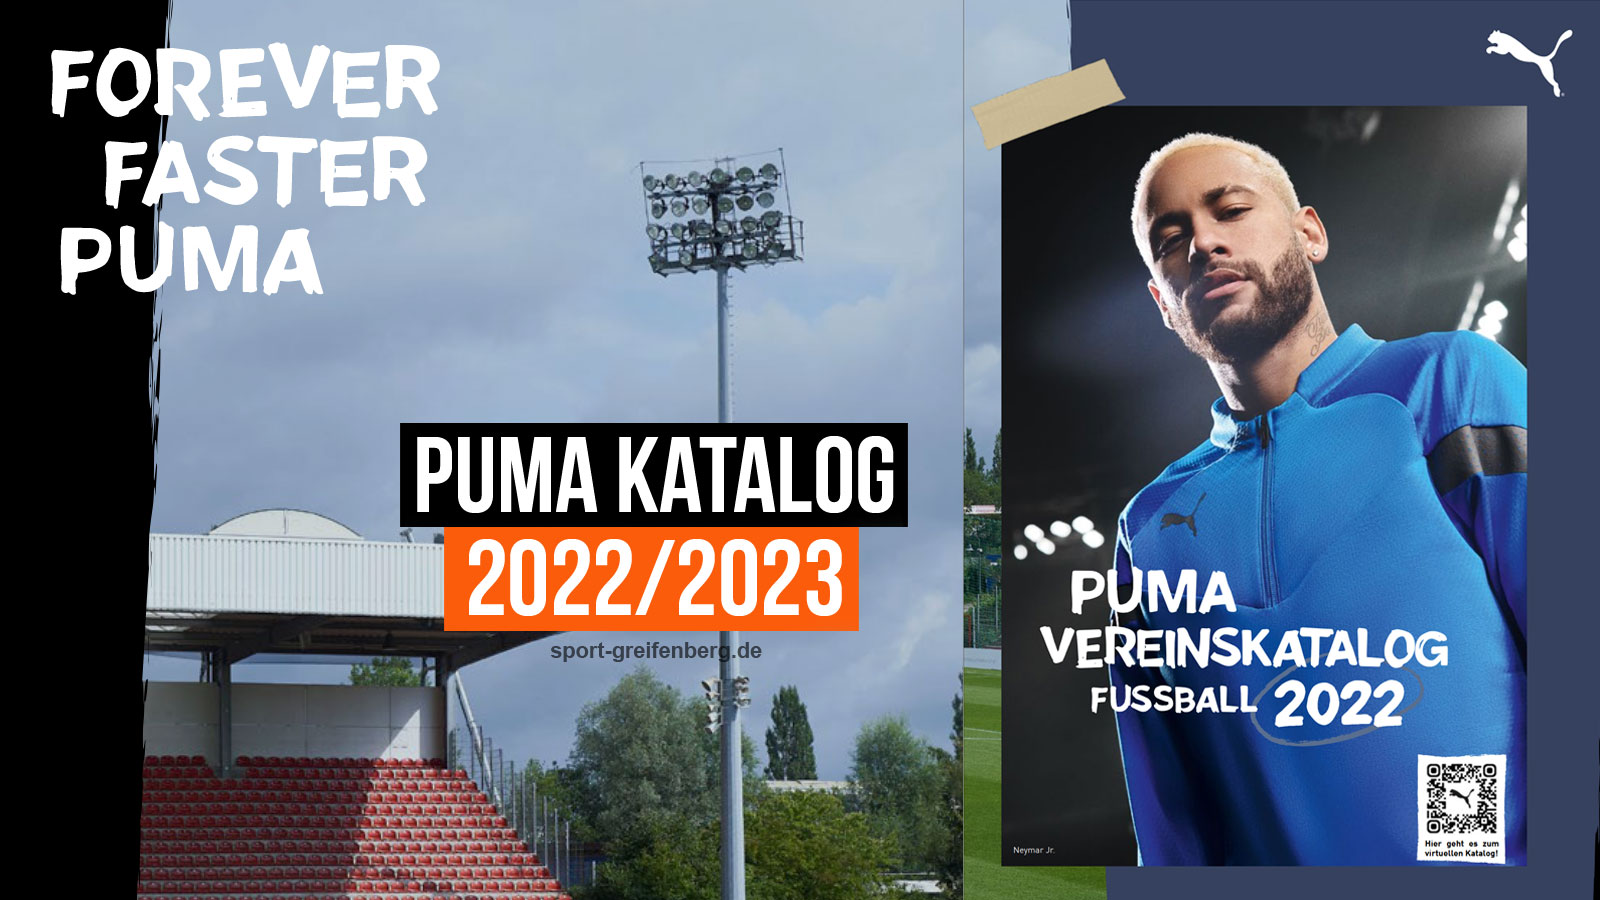 Der Puma Katalog 2022/2023 mit allen Sportartikeln im Shop